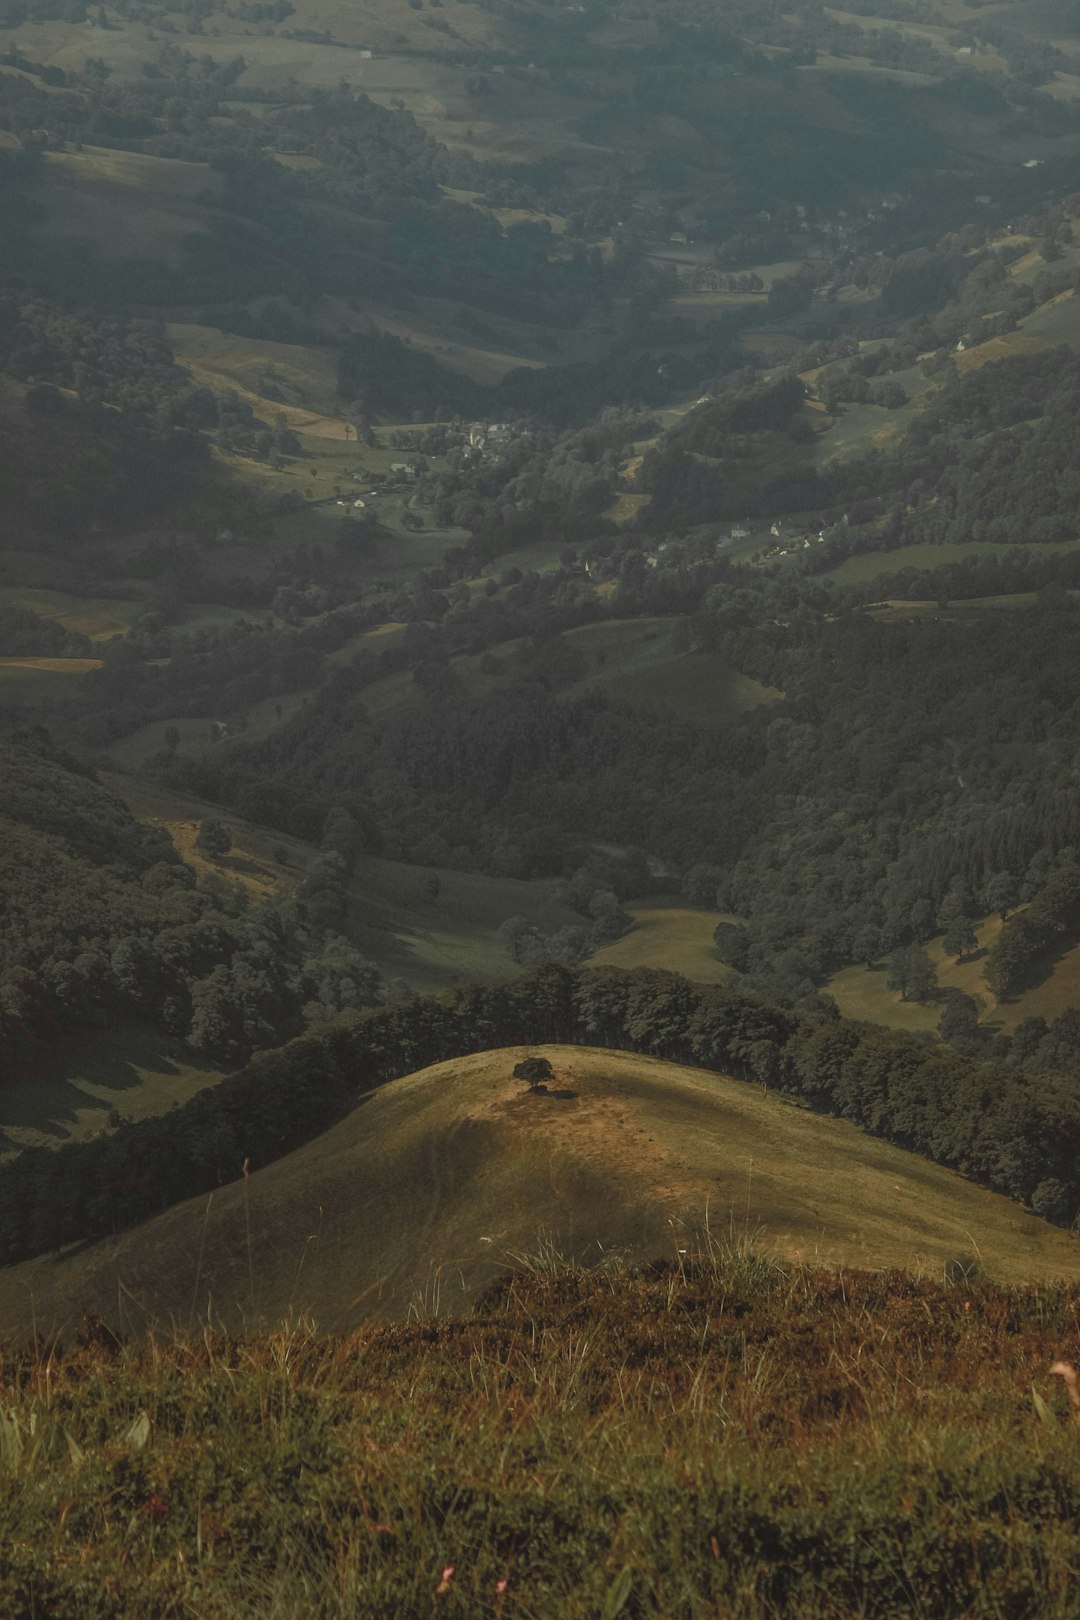 Hill photo spot Parc naturel régional des Volcans d'Auvergne 15100 Saint-Flour